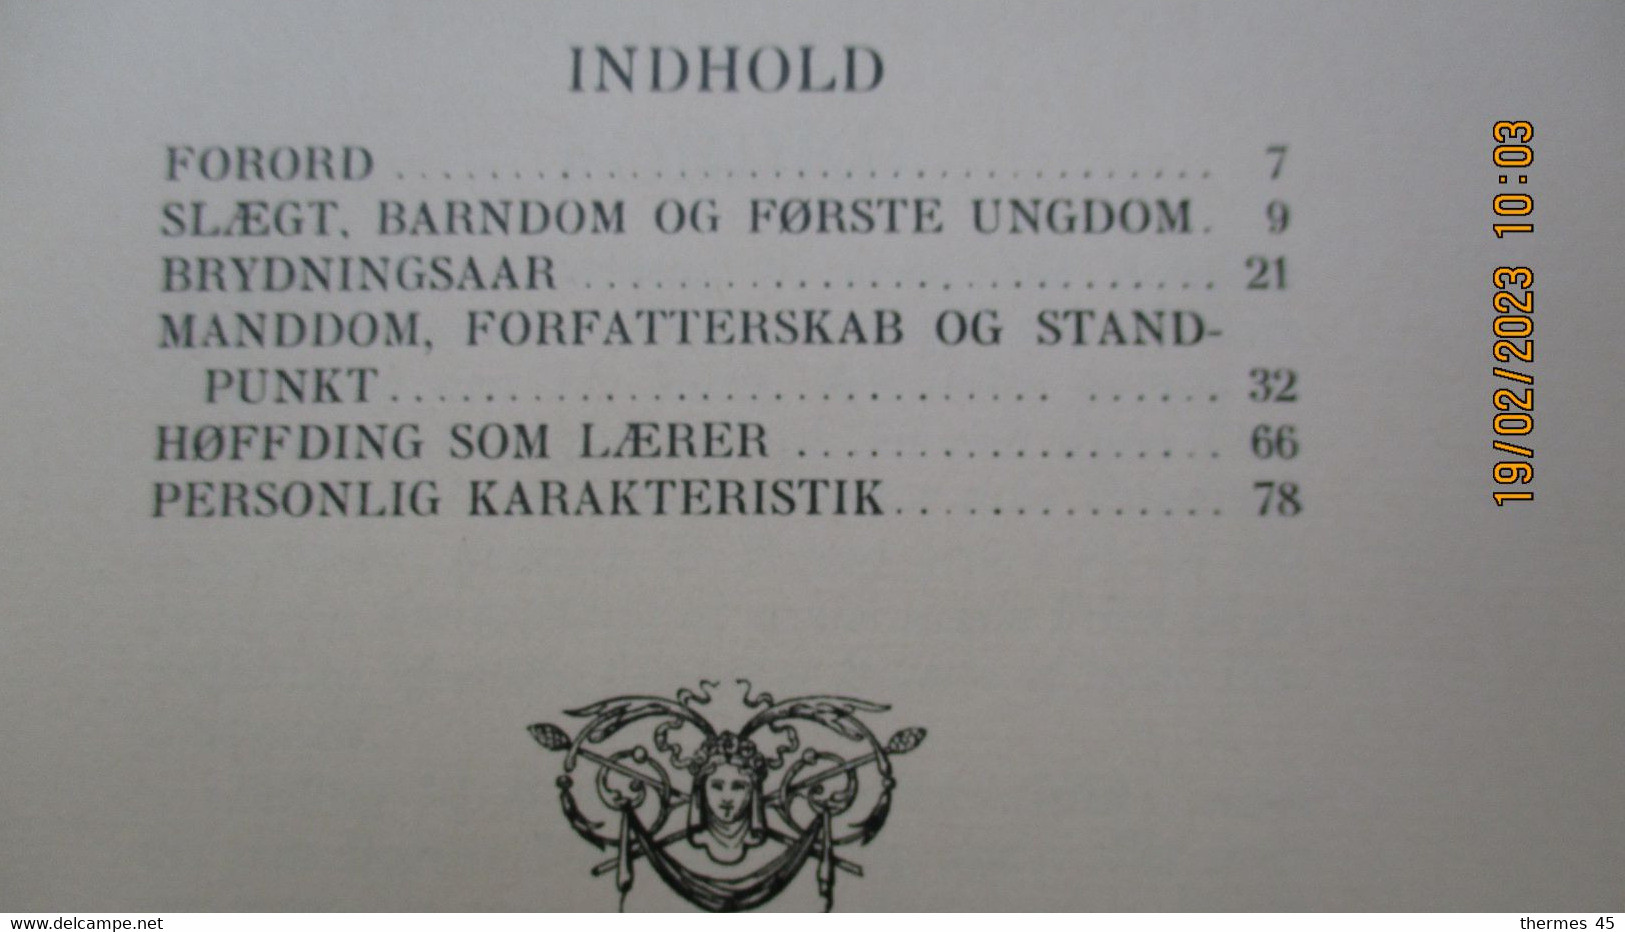 1913 / En Danois / ENVOI / ERIC RINDOM / HARALD HOFFDING / GYLDENDALSKE BOGHANDEL - Skandinavische Sprachen